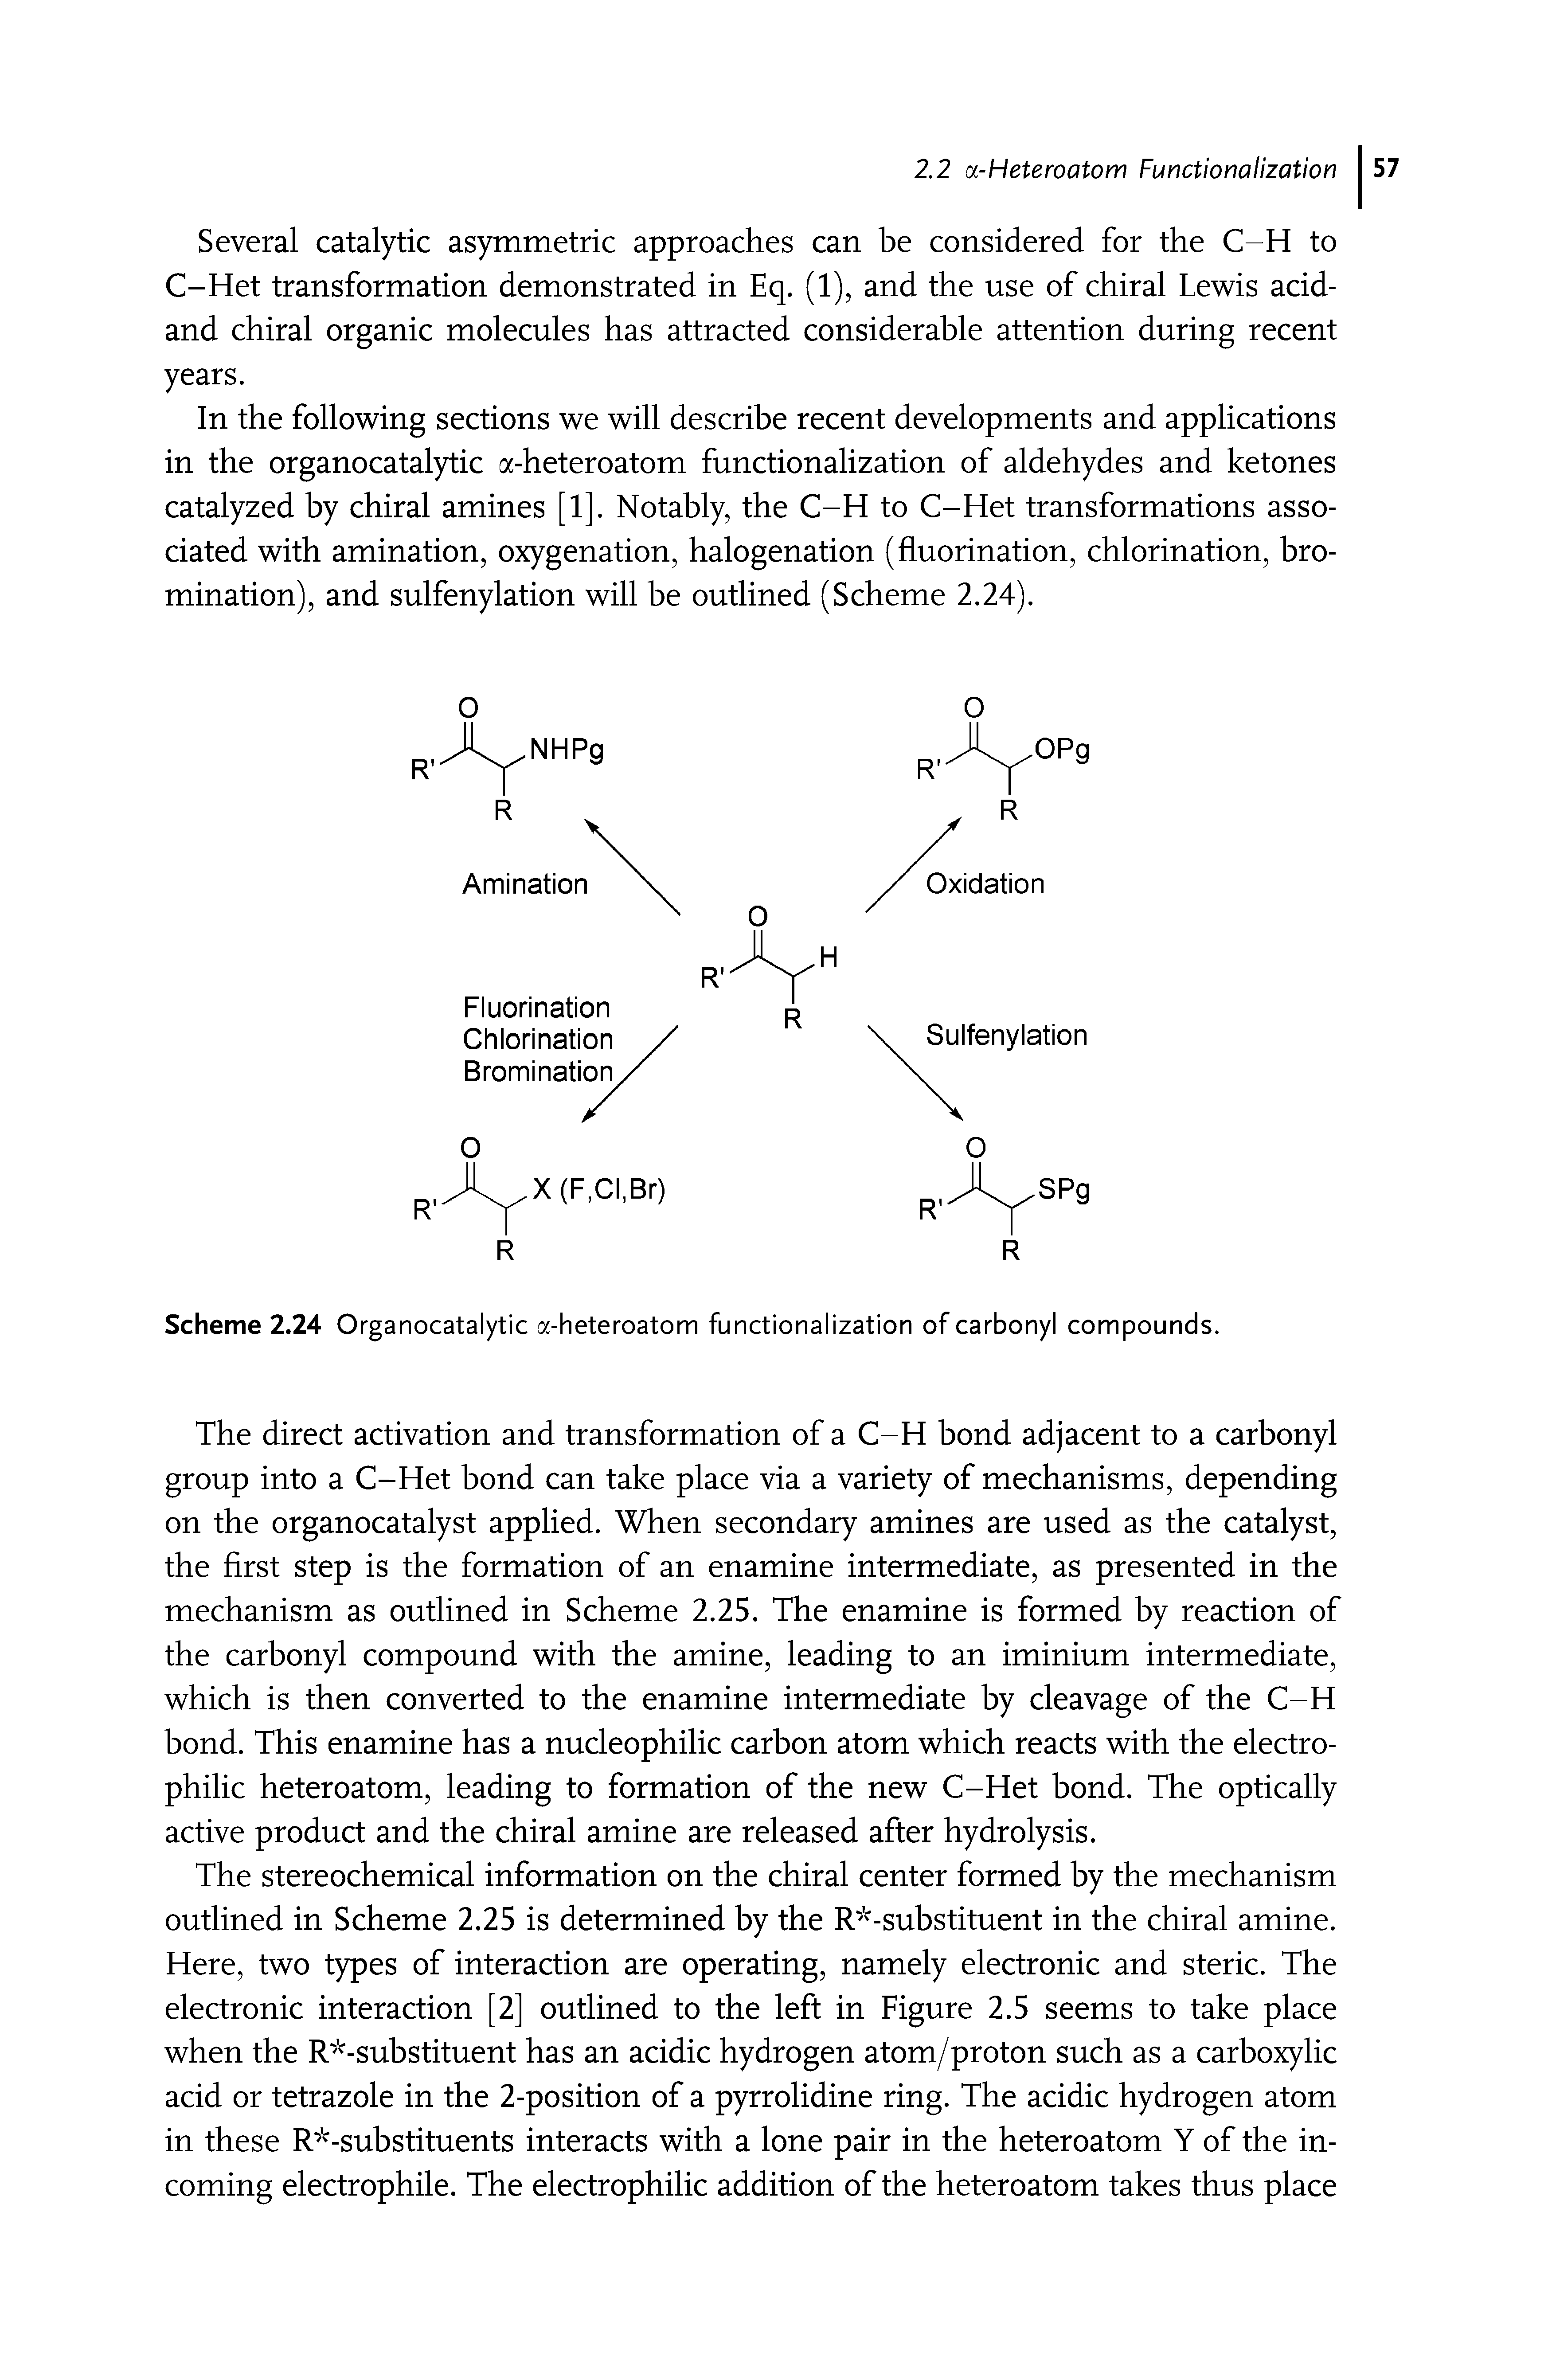 Scheme 2.24 Organocatalytic a-heteroatom functionalization of carbonyl compounds.